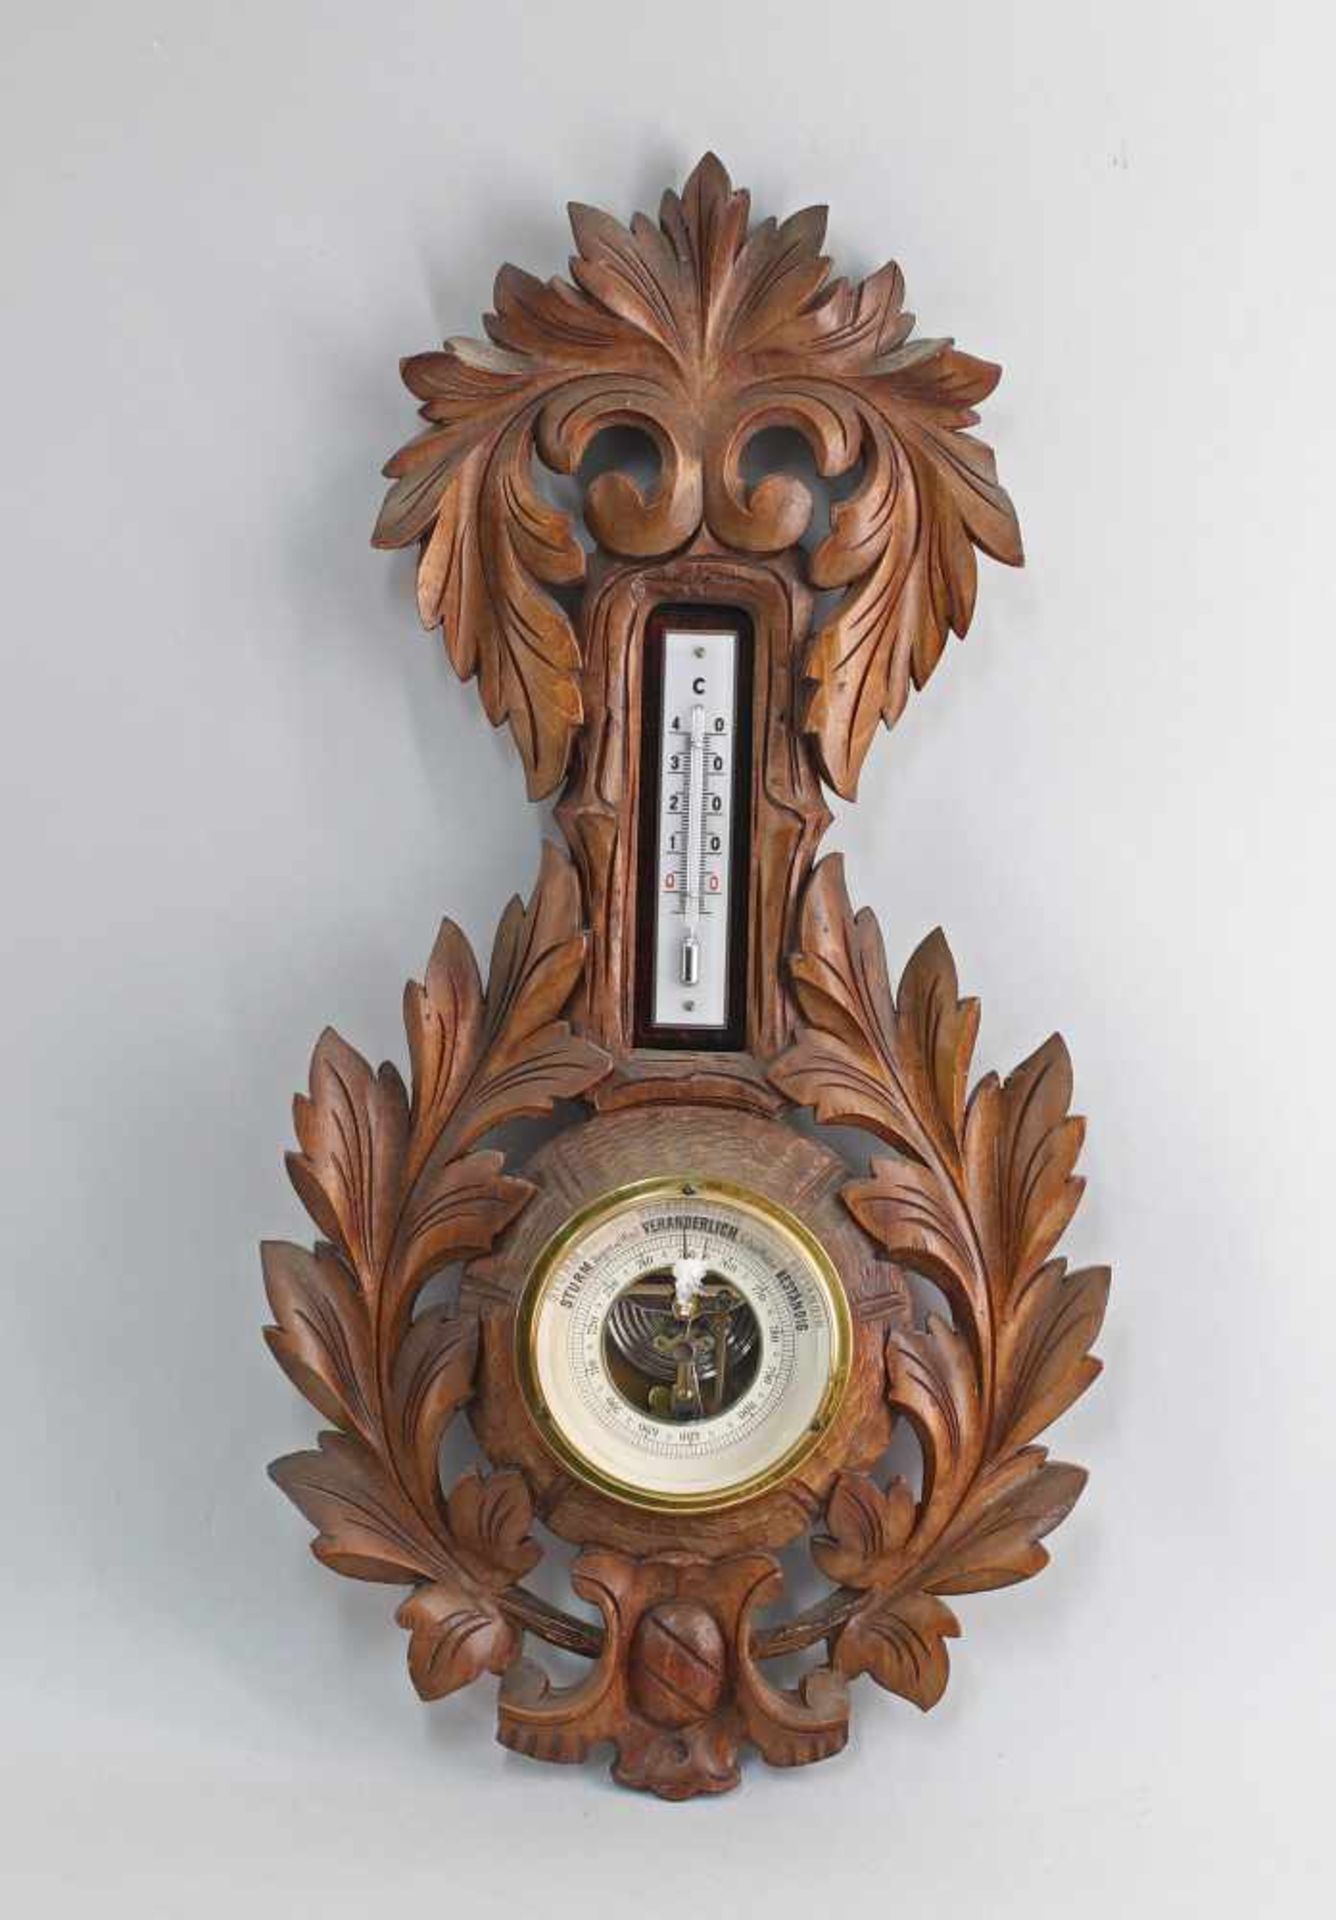 beschnitztes Barometerum 1890, Nußbaum, durchbrochen verziert, Thermometer mit Anzeige in Grad